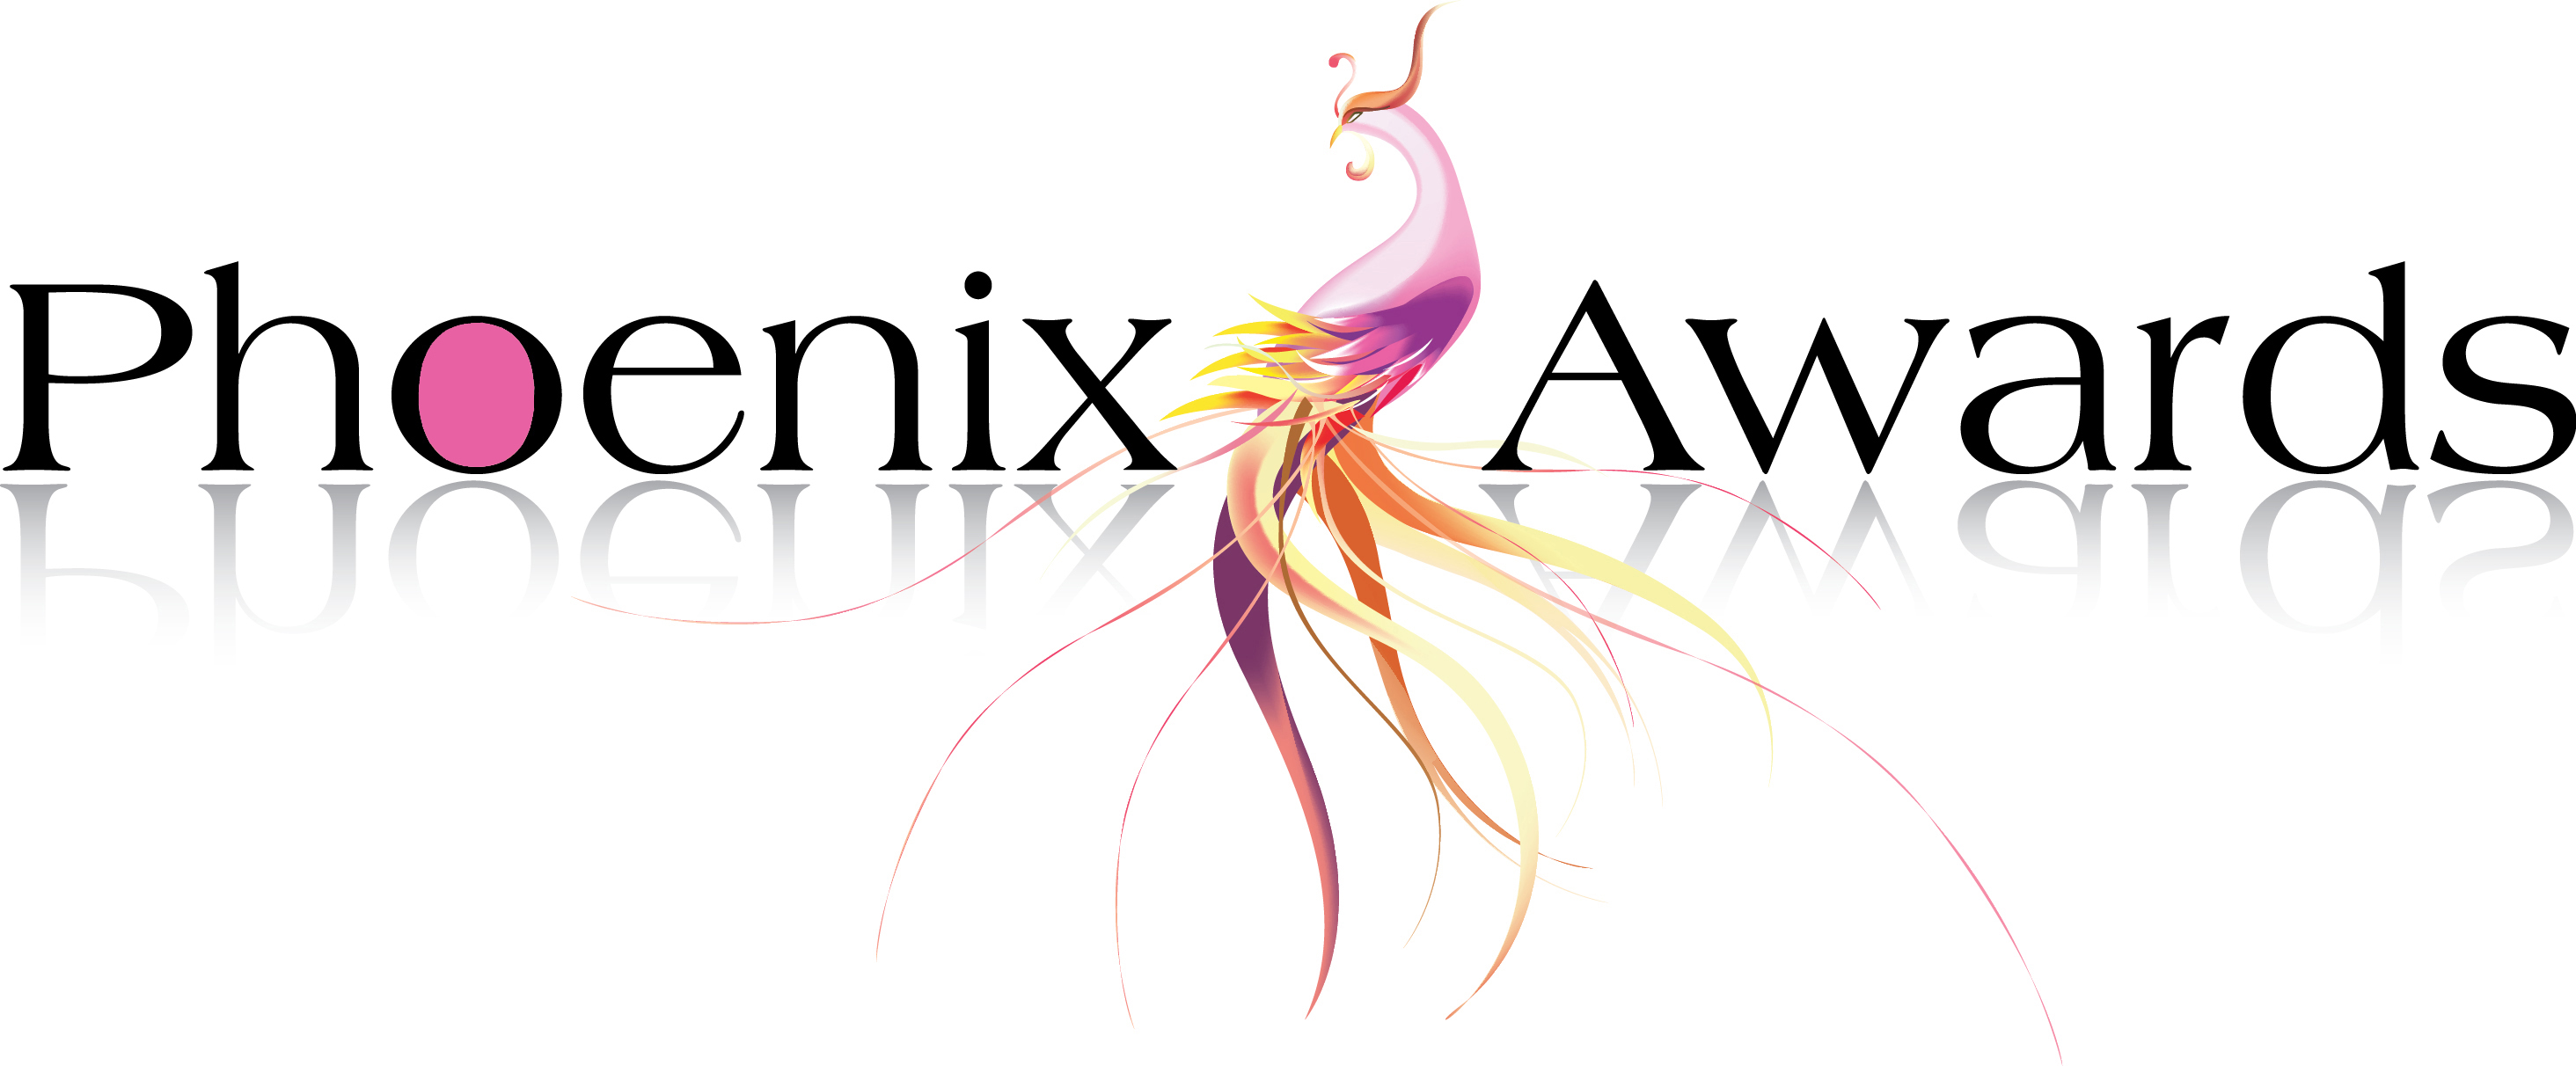 Phoenix Awards logo image